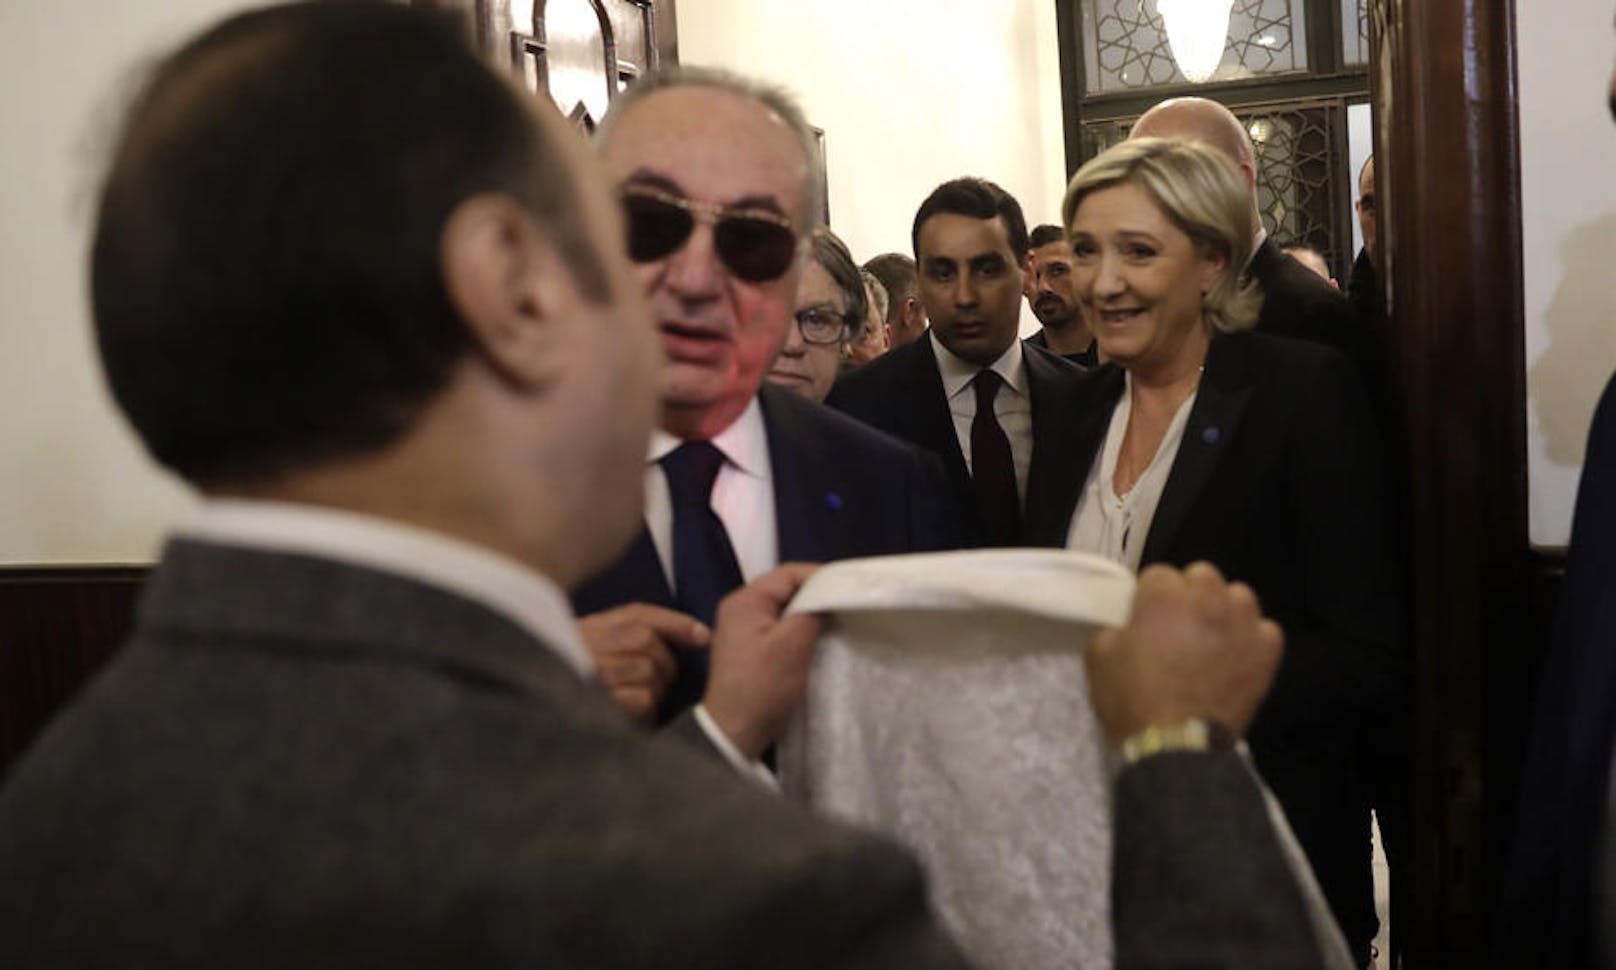 21.02.2017: Die französische Präsidentschaftskandidatin Marine Le Pen (Front National) lehnte im Libanon vor einem Treffen mit dem libanesischen Großmufti ein ihr gereichtes Kopftuch ab. Das Treffen wurde abgesagt. (Foto: AP)